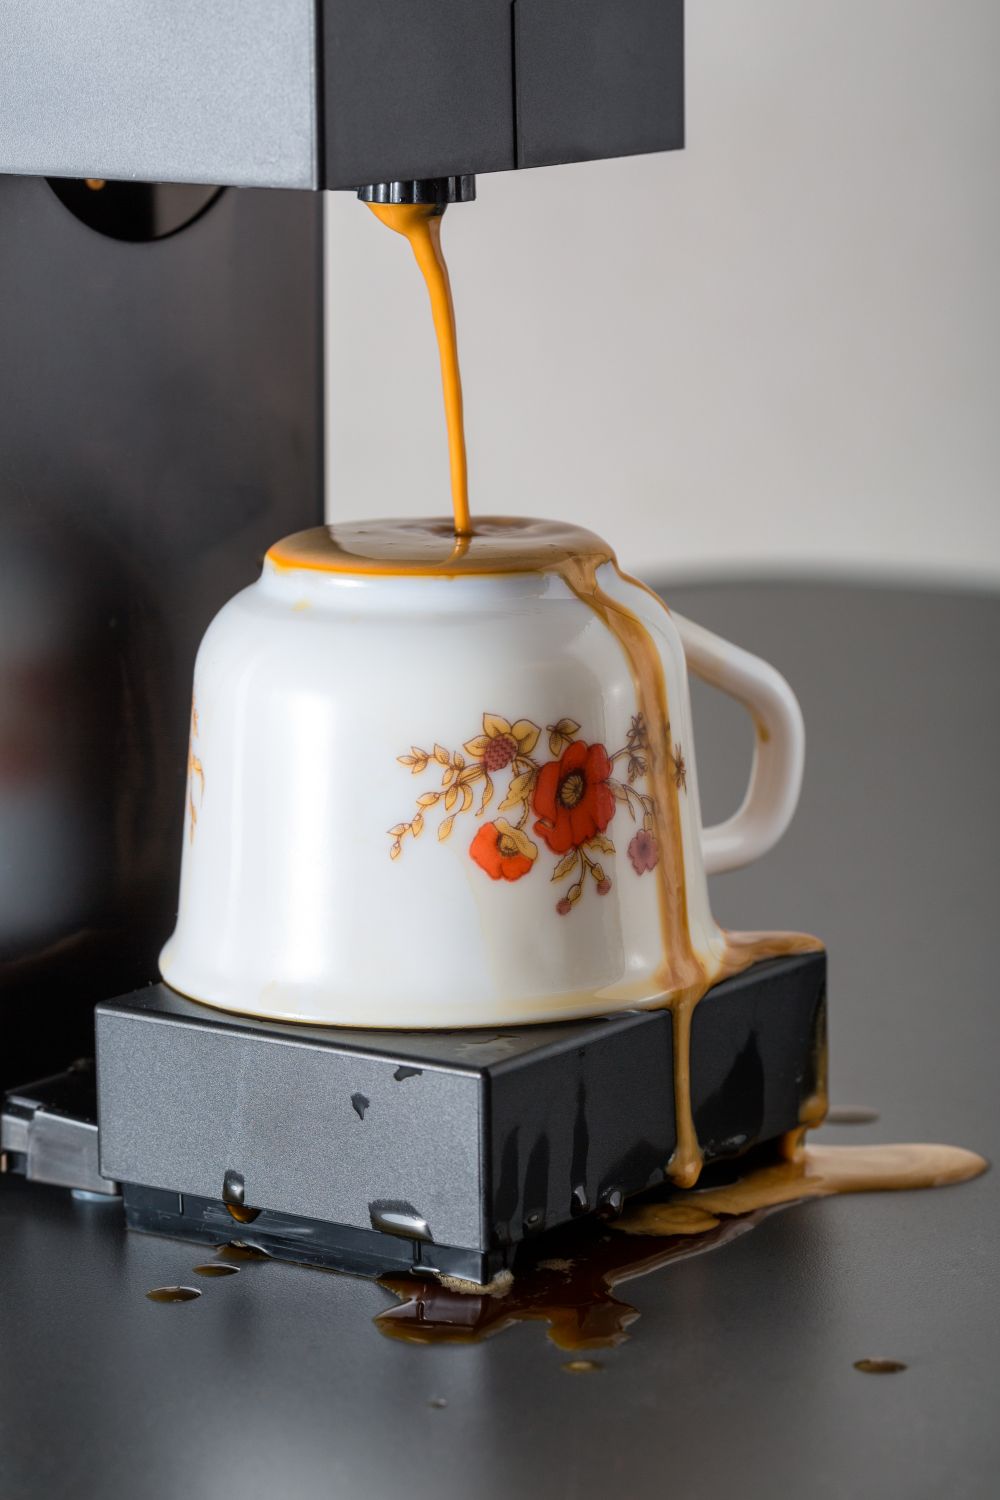 Dépanner soi-même sa machine à café